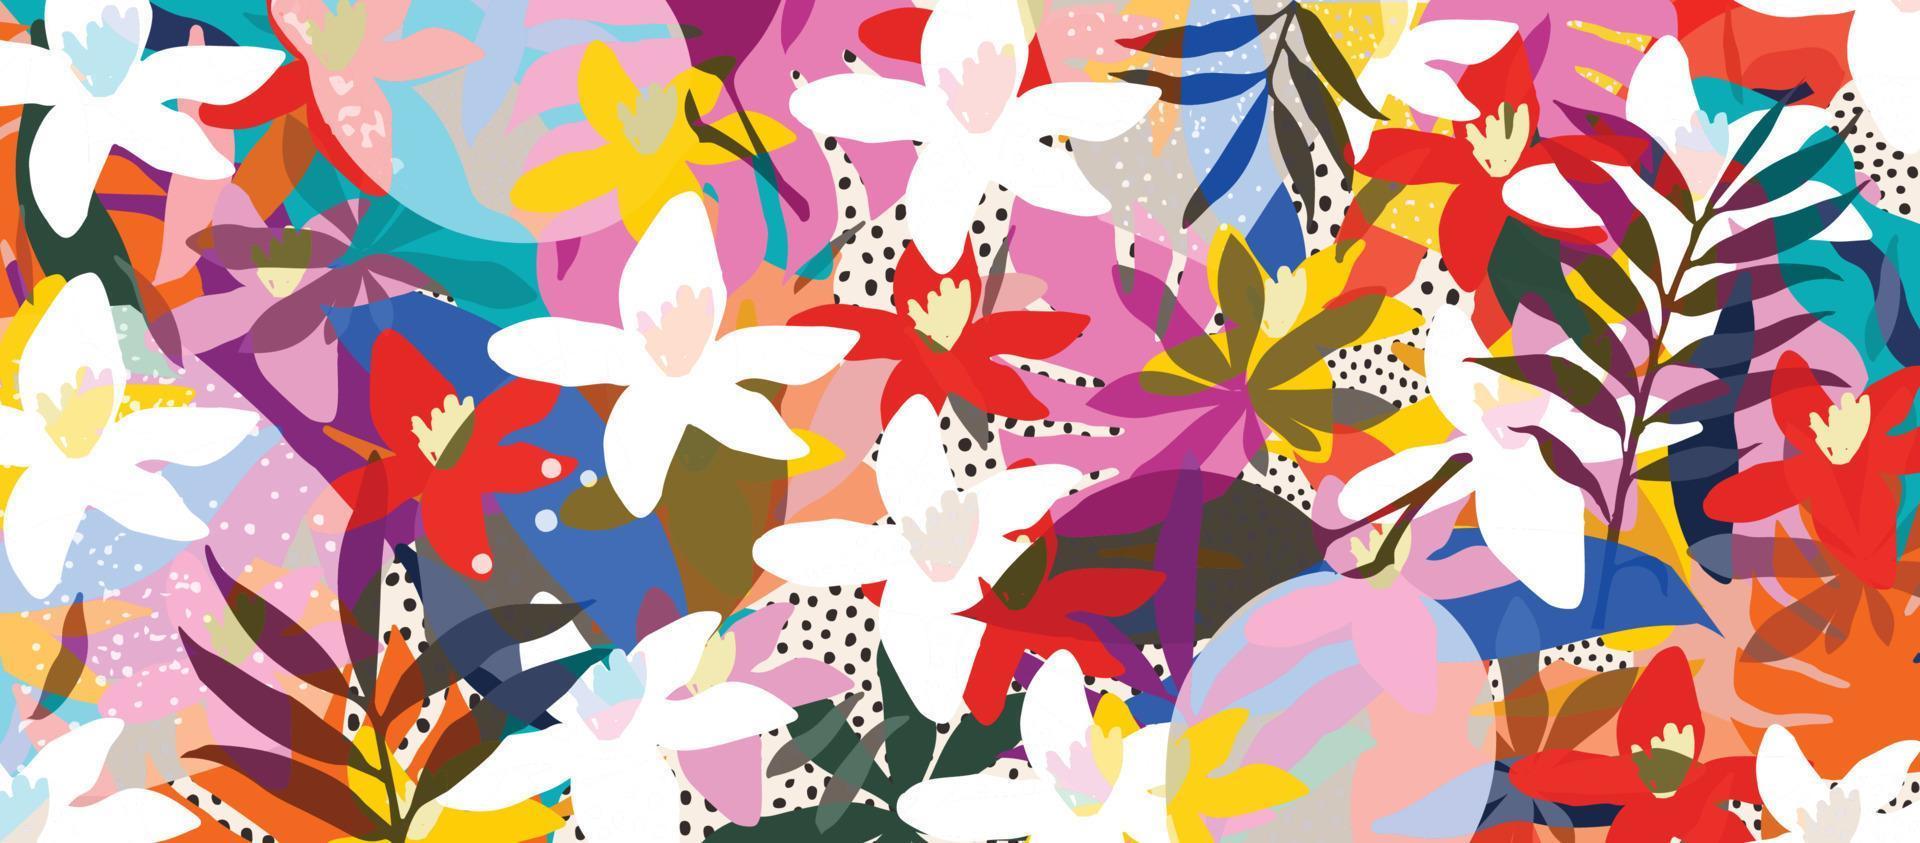 söt trädgård blommor och löv färgrik mönster. abstrakt konst natur bakgrund vektor illustration. botanisk design för baner, vägg konst, kort, grafik och tyger